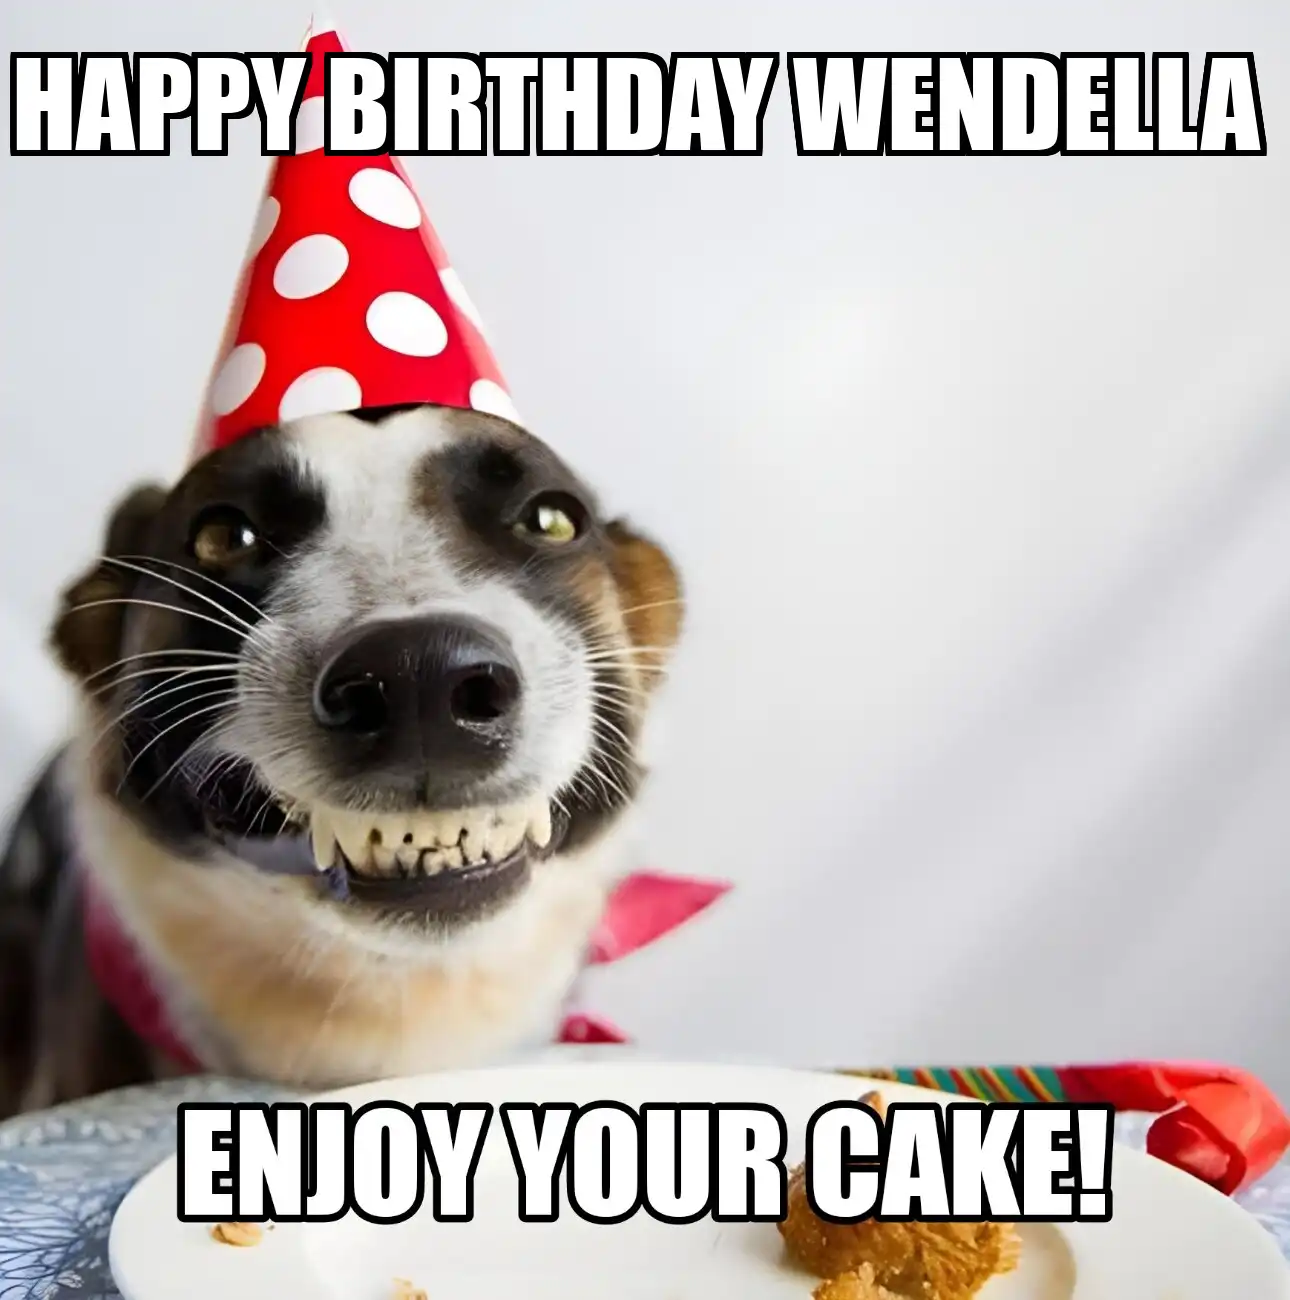 Happy Birthday Wendella Enjoy Your Cake Dog Meme